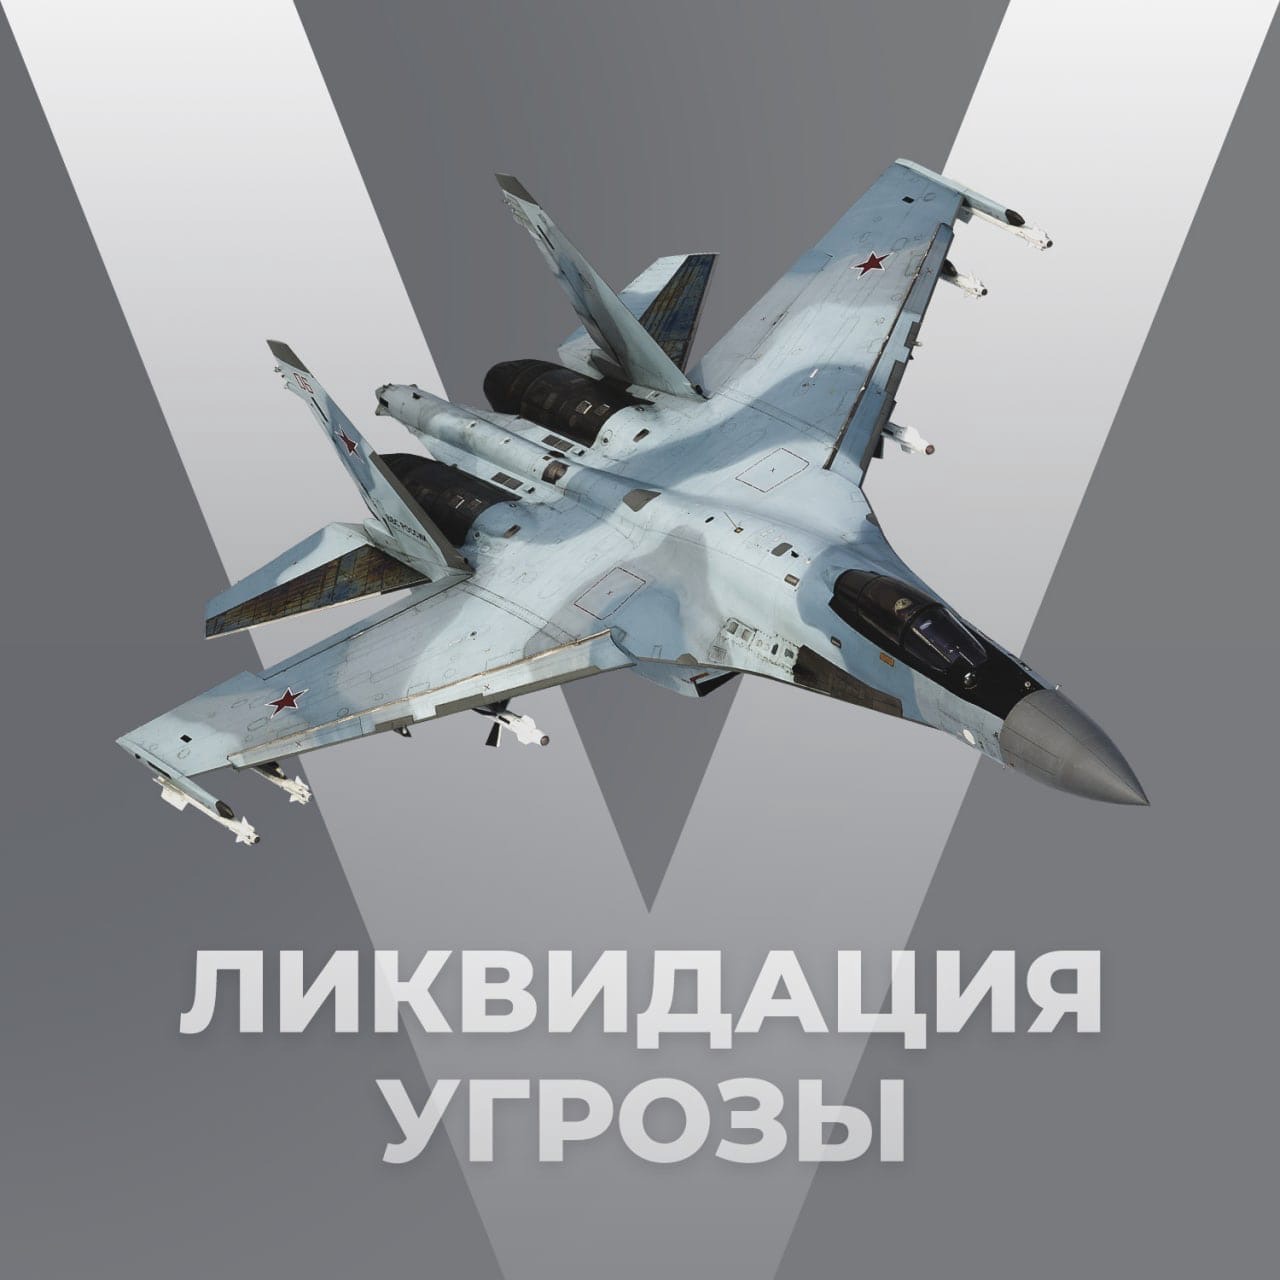 Российский истребитель в воздушном бою сбил украинский самолет Су-25